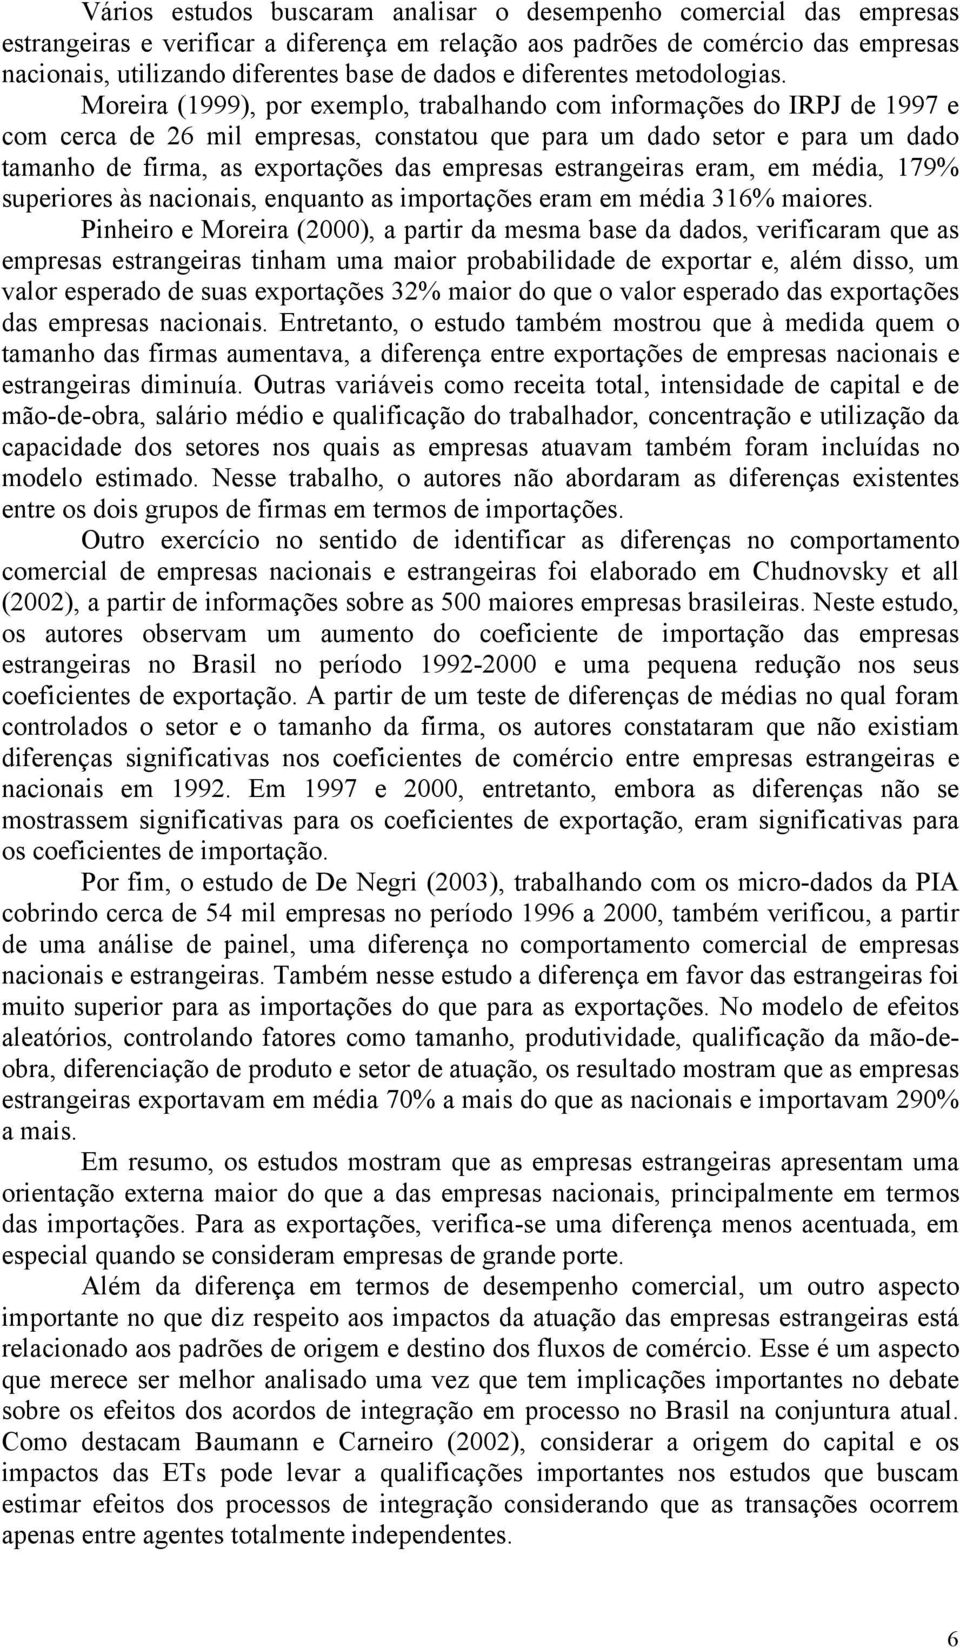 Moreira (1999), por exemplo, trabalhando com informações do IRPJ de 1997 e com cerca de 26 mil empresas, constatou que para um dado setor e para um dado tamanho de firma, as exportações das empresas